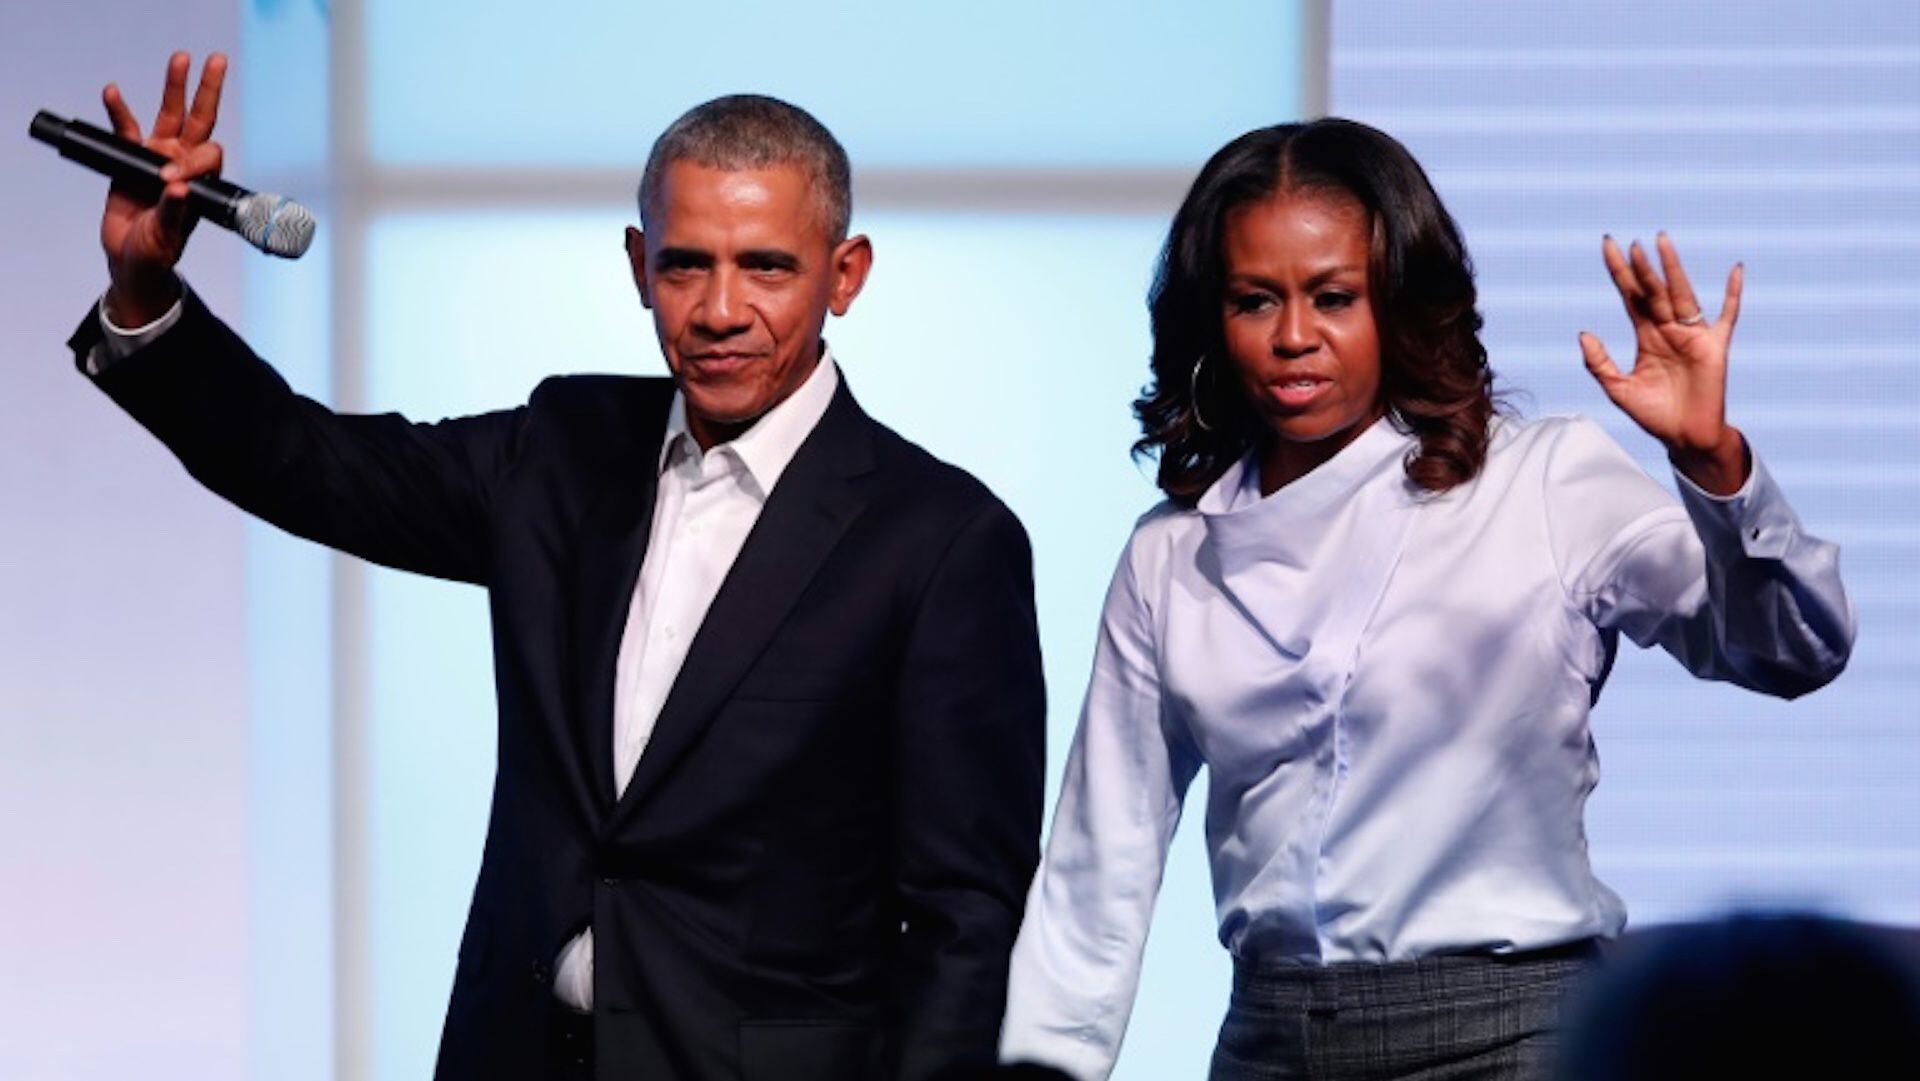 ARCHIVO: el expresidente estadounidense Barack Obama y su esposa Michelle en una reunión de la Obama Foundation en Chicago, en octubre de 2017 (AFP)  